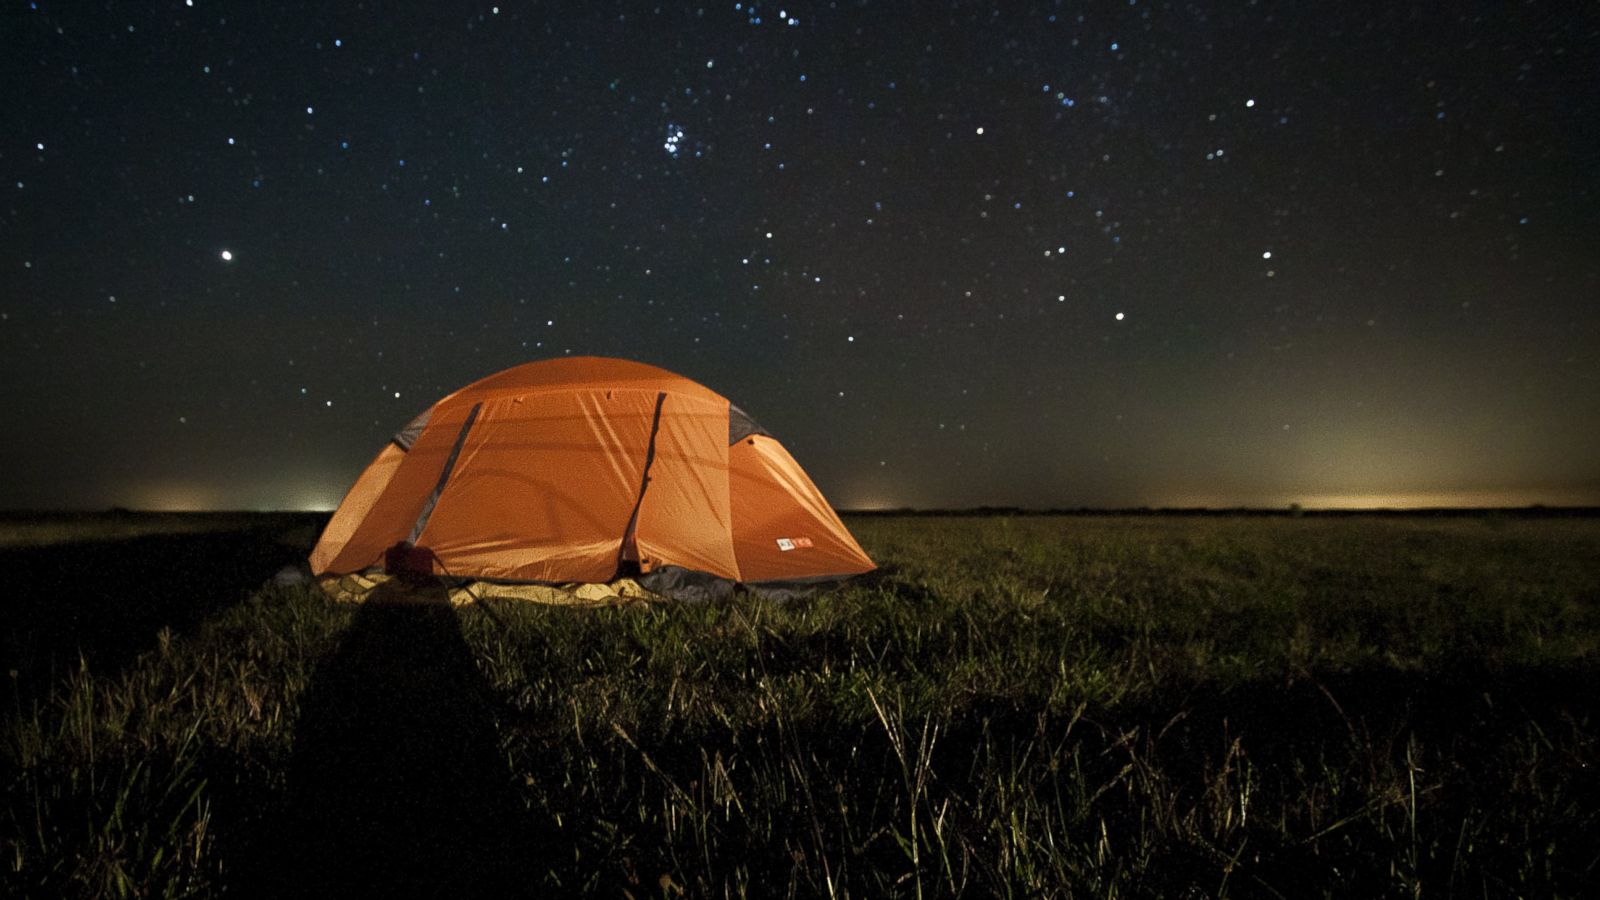 I love camping. Палатка ночью. Палатка светится в ночи. Палатка для похода в горы. Желтая палатка ночью.